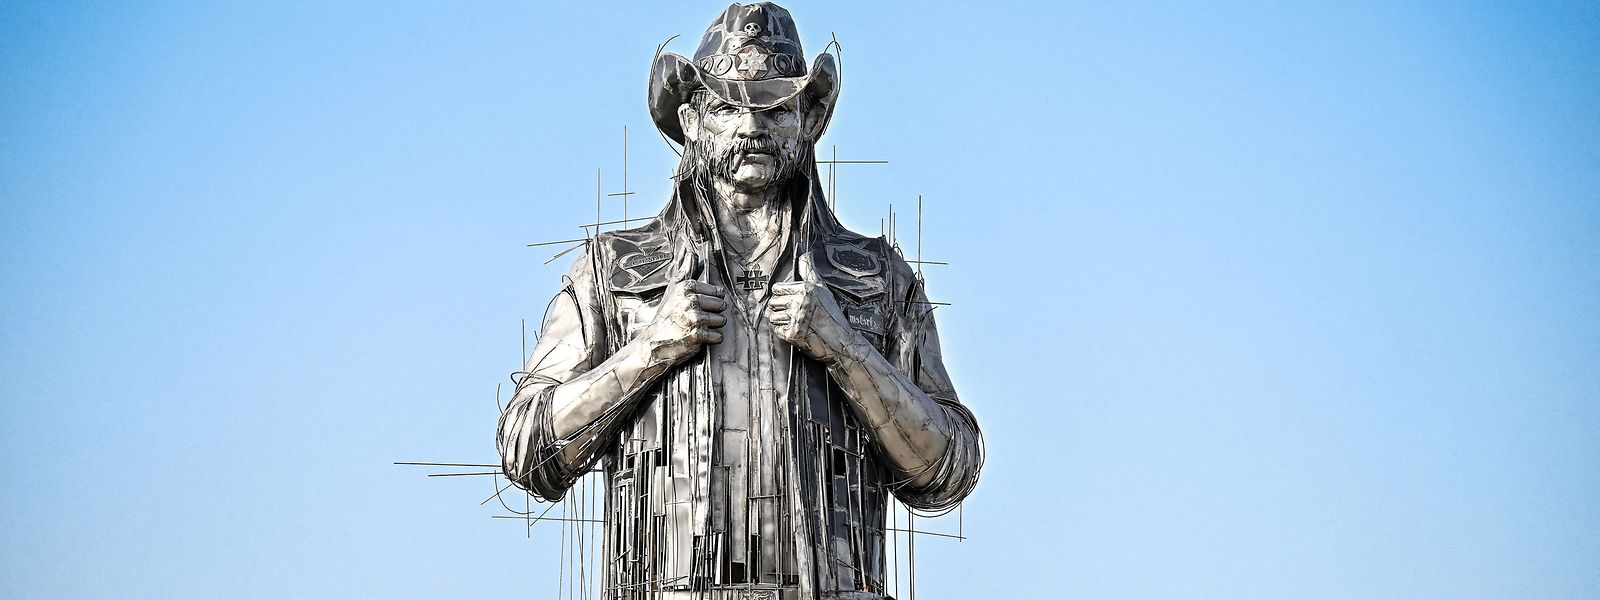 Die zwölf Meter hohe Statue von Lemmy Kilmister wird am 23. Juni offiziell eingeweiht. 